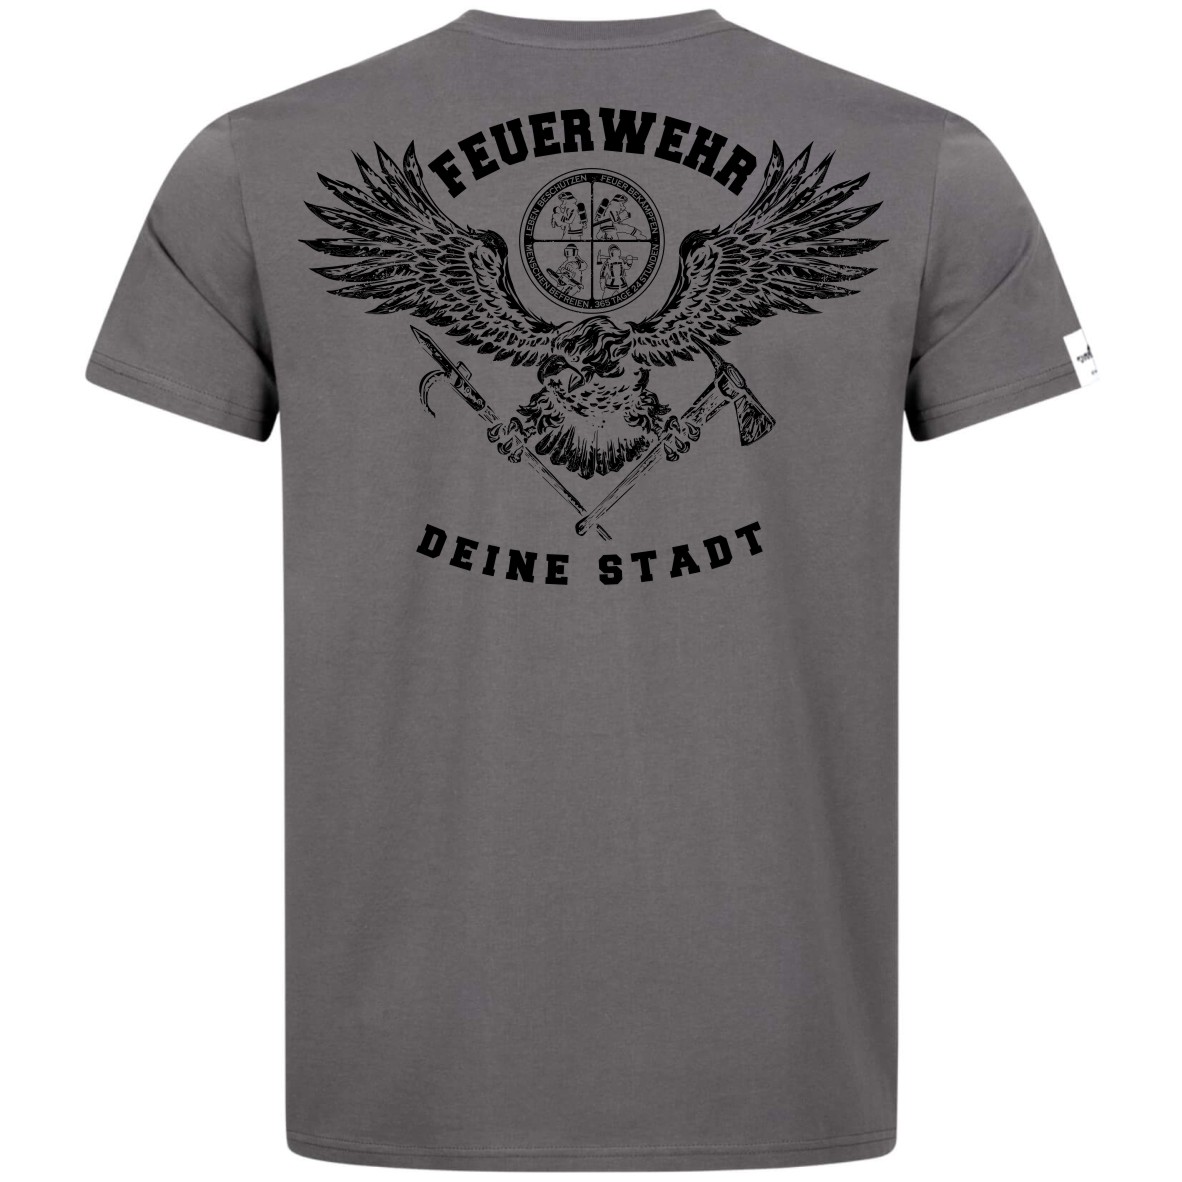 Teamwear Männer T-Shirt - Tradition + Deine Stadt